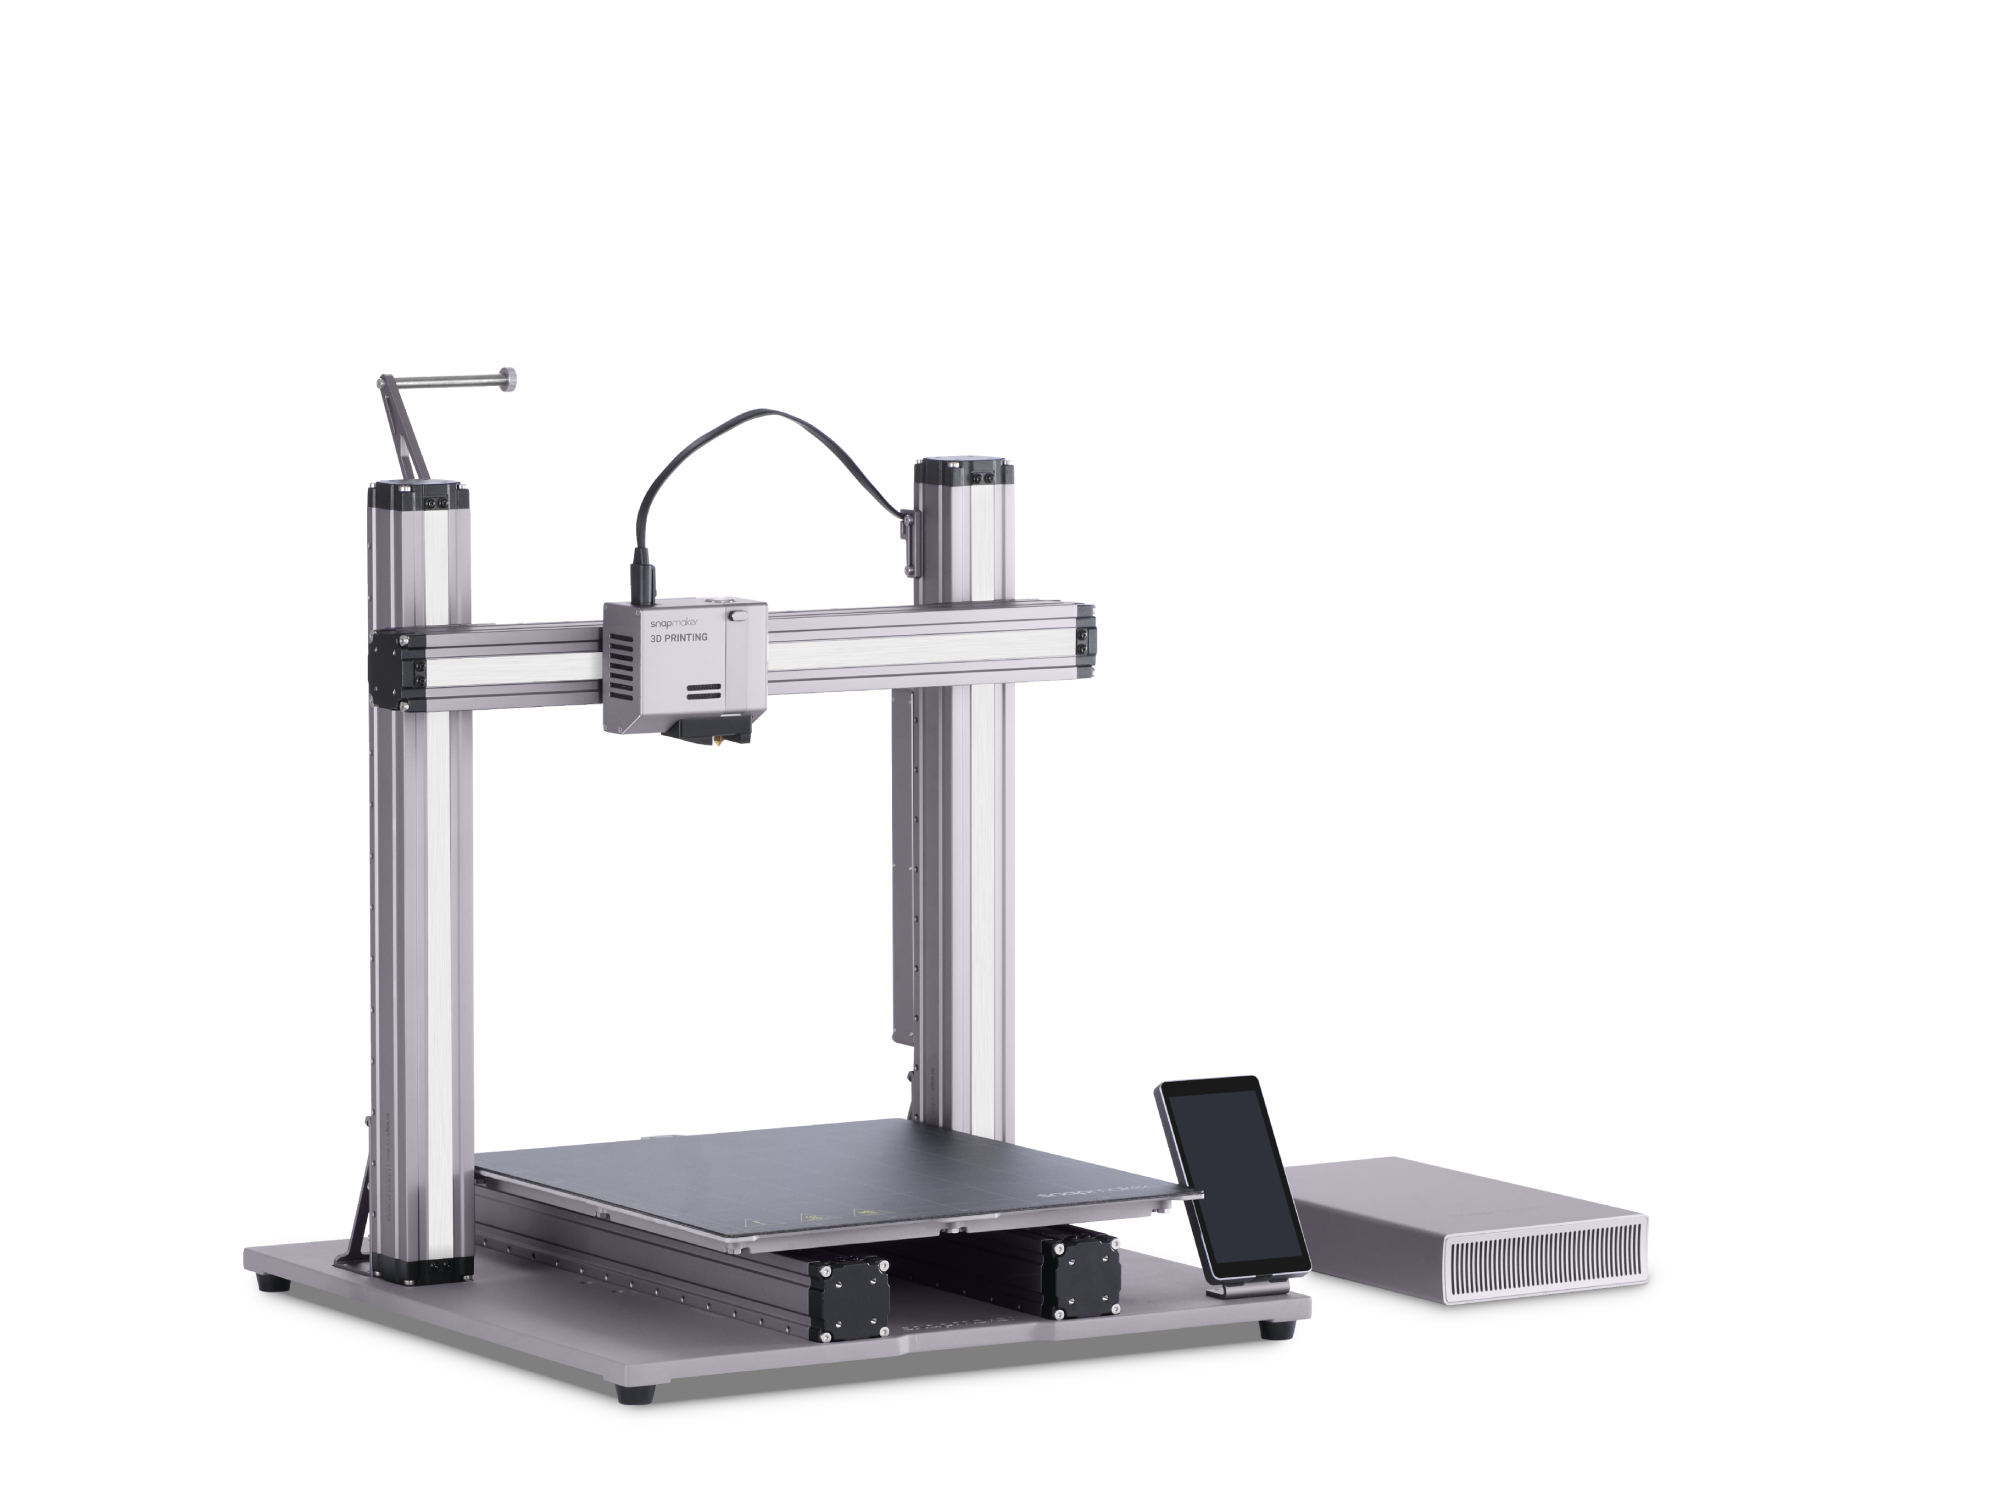 SNAPMAKER ARTISAN MODULAR 3D PRINTER (VAT INCL.)